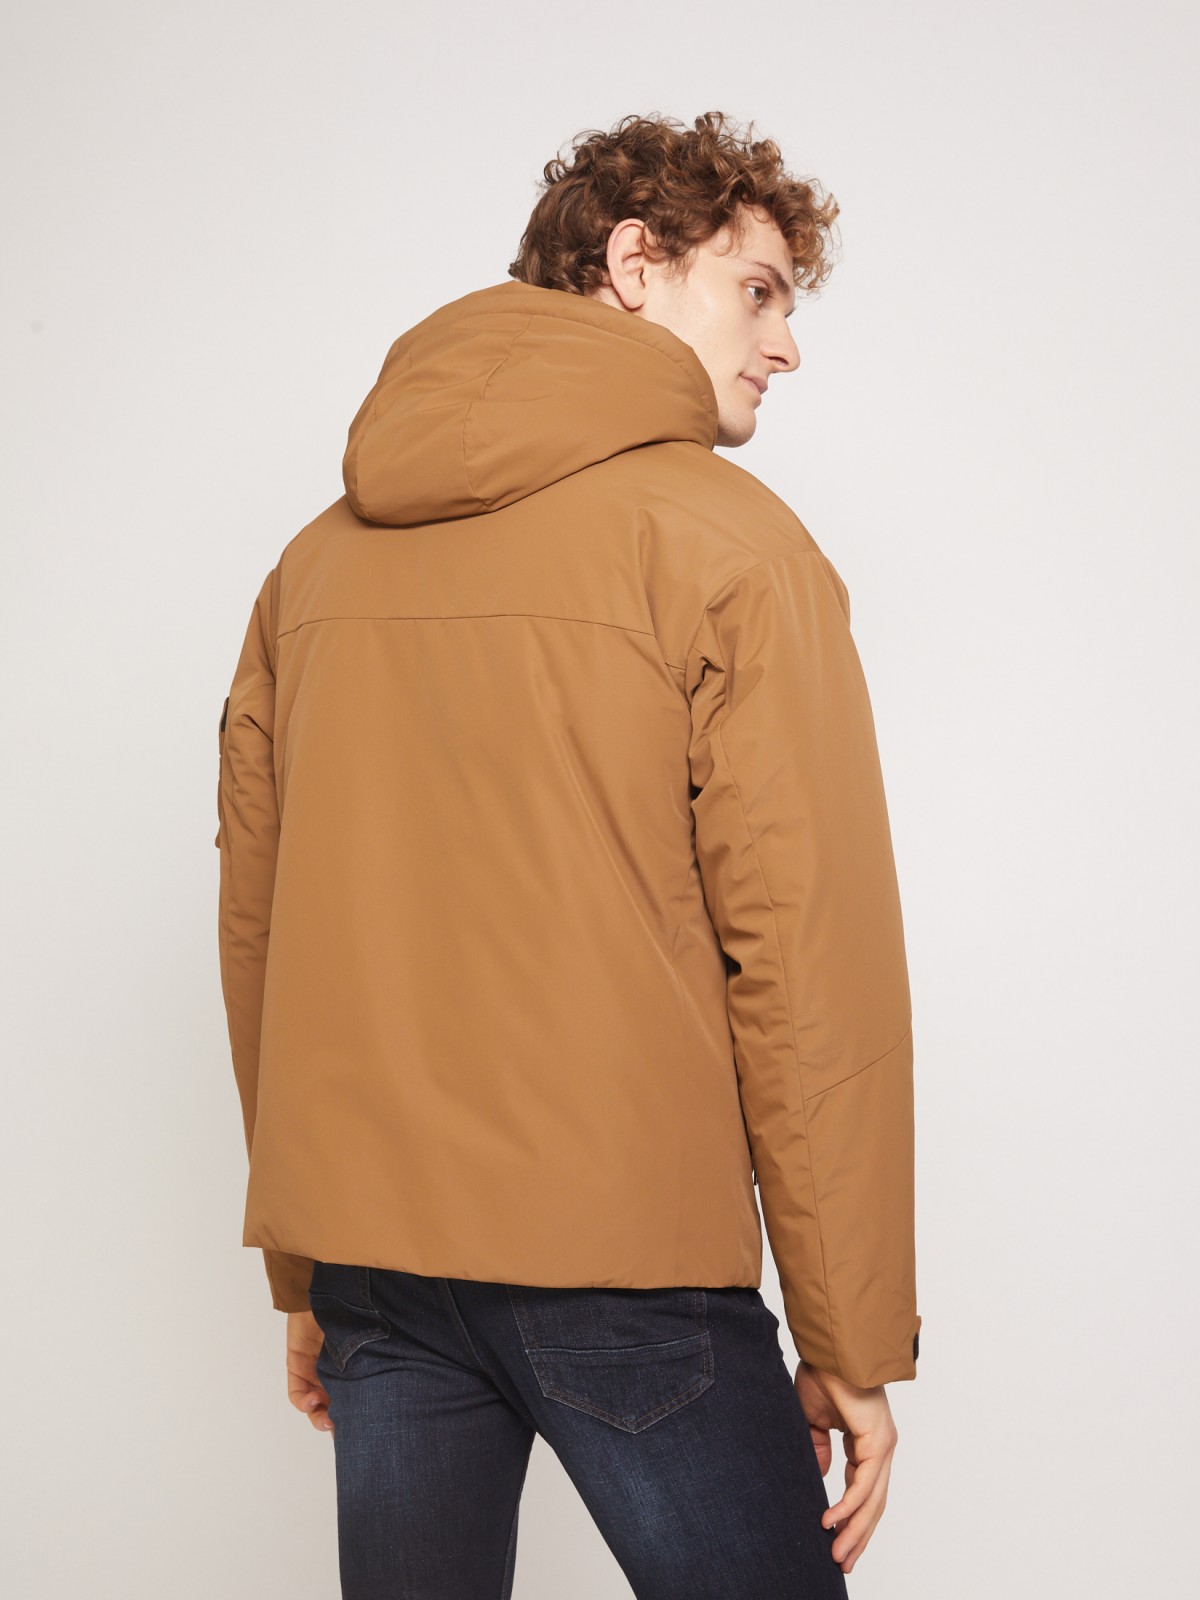 Утеплённая куртка с накладными карманами и капюшоном zolla 011335102244, цвет горчичный, размер S - фото 6